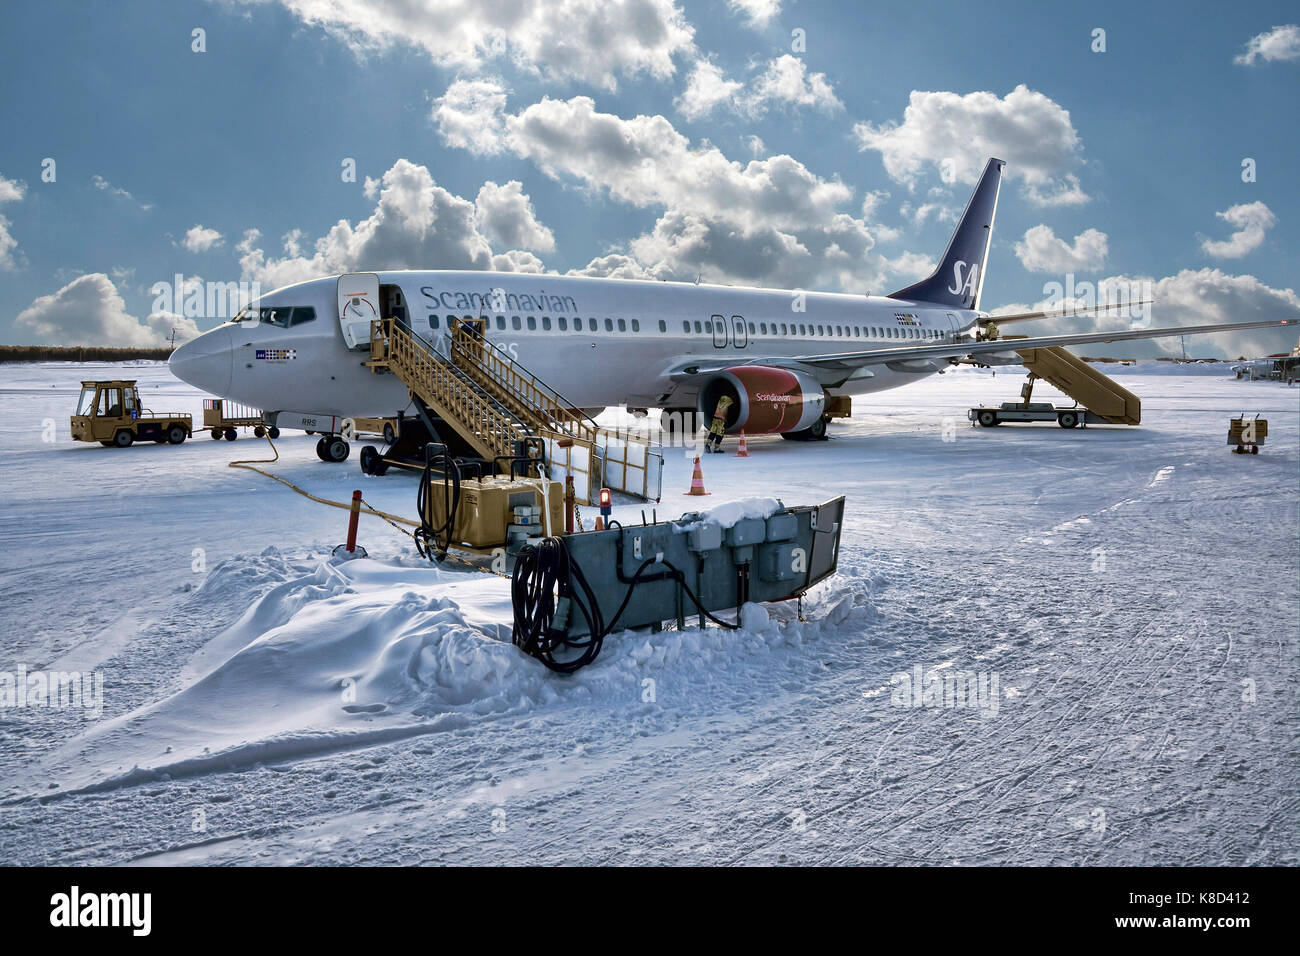 KIRUNA, Suecia - 26 de febrero de 2012: SAS Scandinavian airlines durante los últimos procedimientos de control antes de la salida. Estado de nieve. Foto de stock